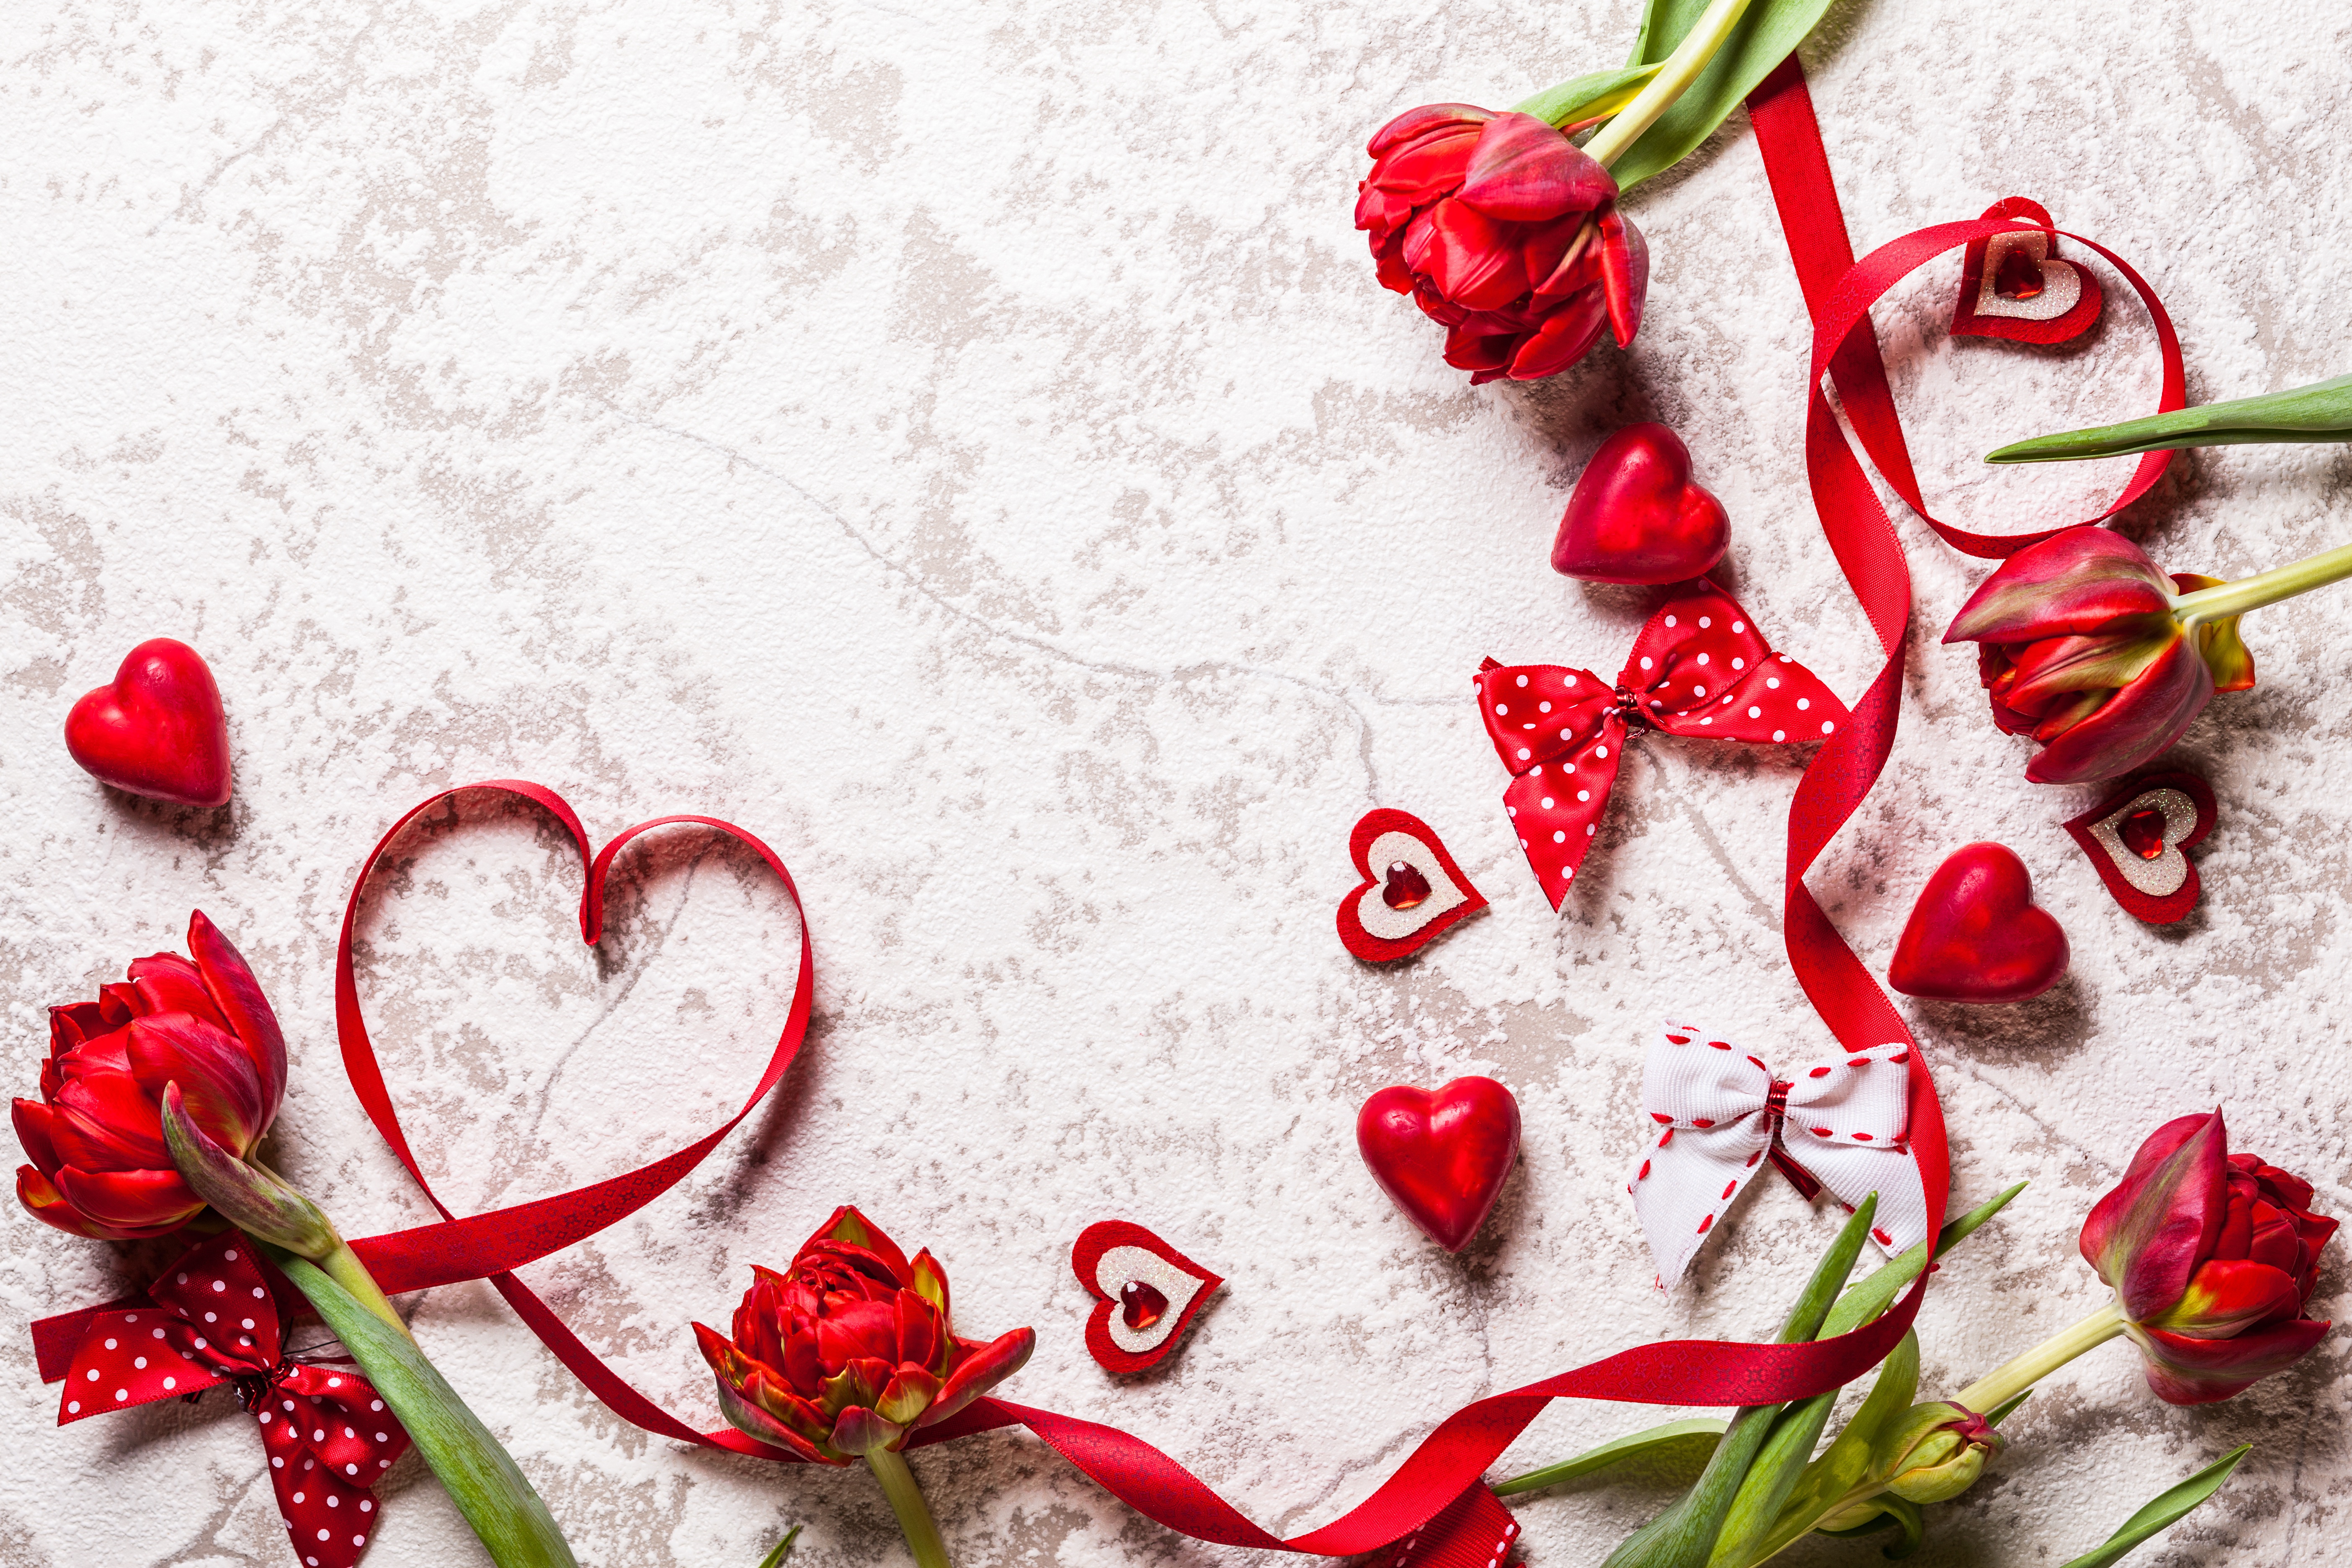 Скачать обои бесплатно Любовь, Цветок, Тюльпан, День Святого Валентина, Праздничные, Красный Цветок картинка на рабочий стол ПК